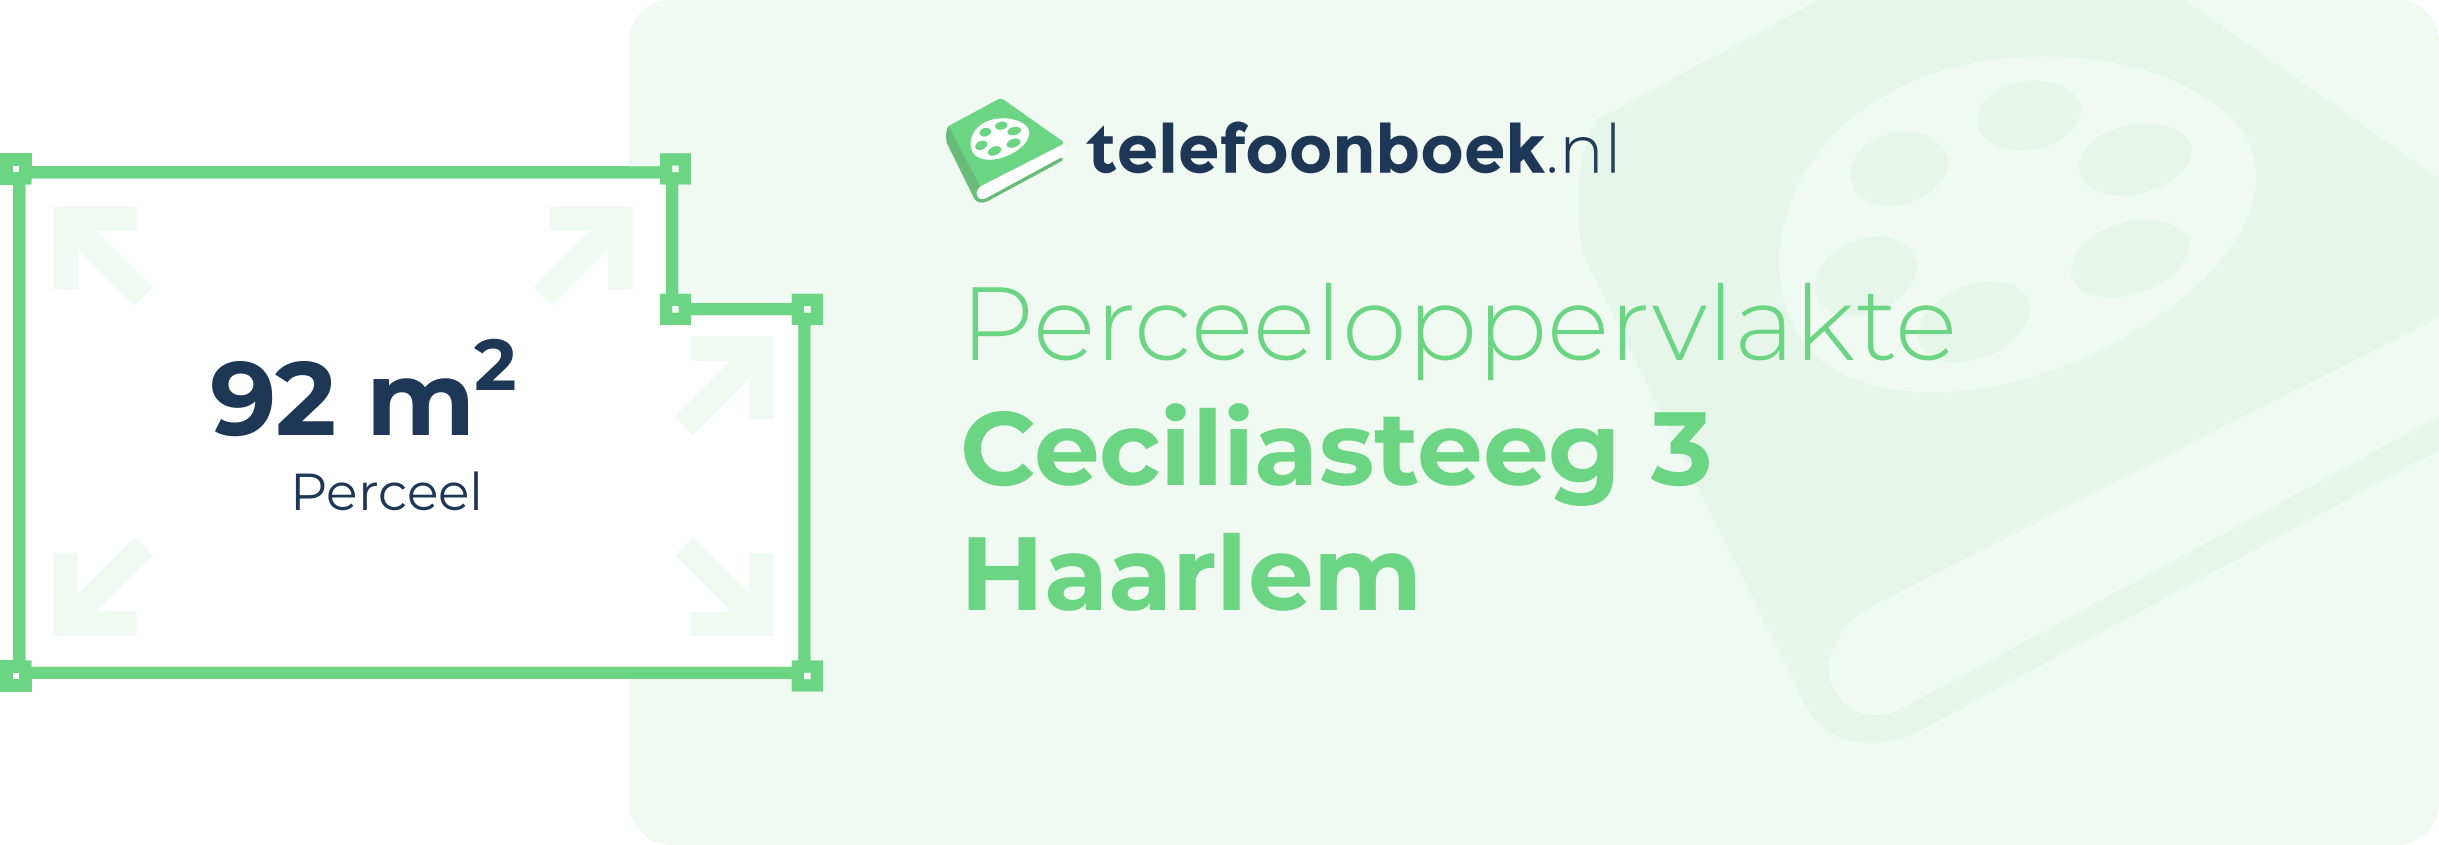 Perceeloppervlakte Ceciliasteeg 3 Haarlem